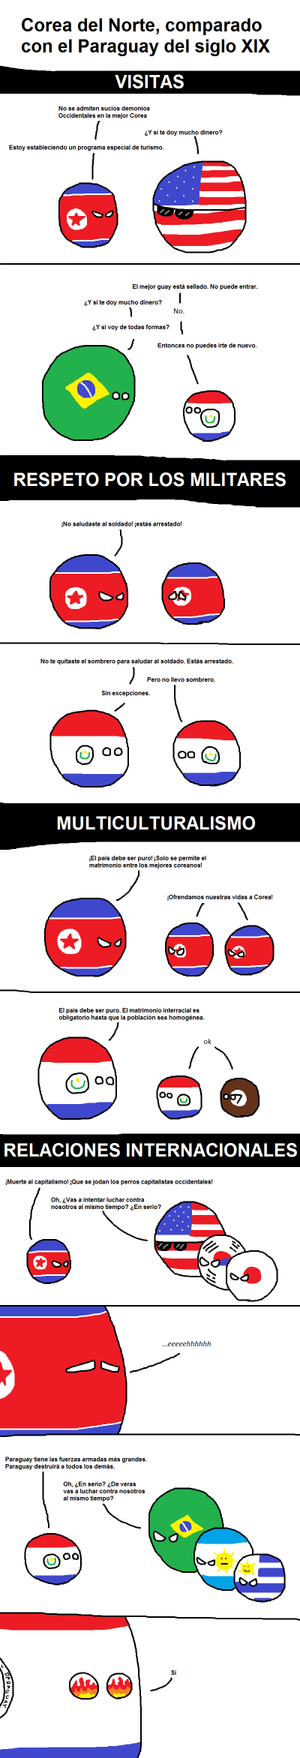 Corea del Norte y Paraguay decimonónico.png